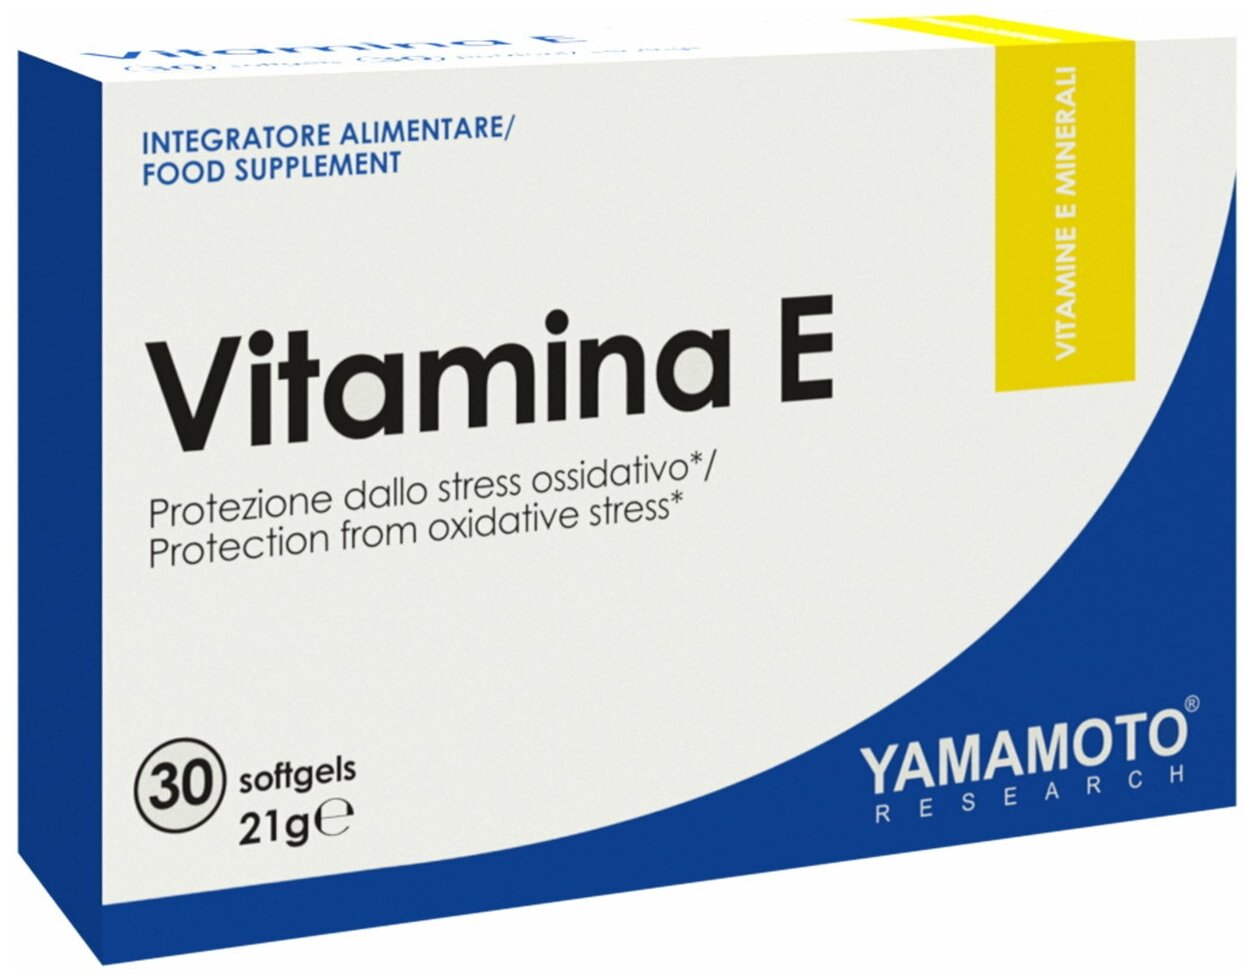 Витамин E Yamamoto Research Vitamina E (Витамин Е) 36 mg 30 софтгелей 30 капсул